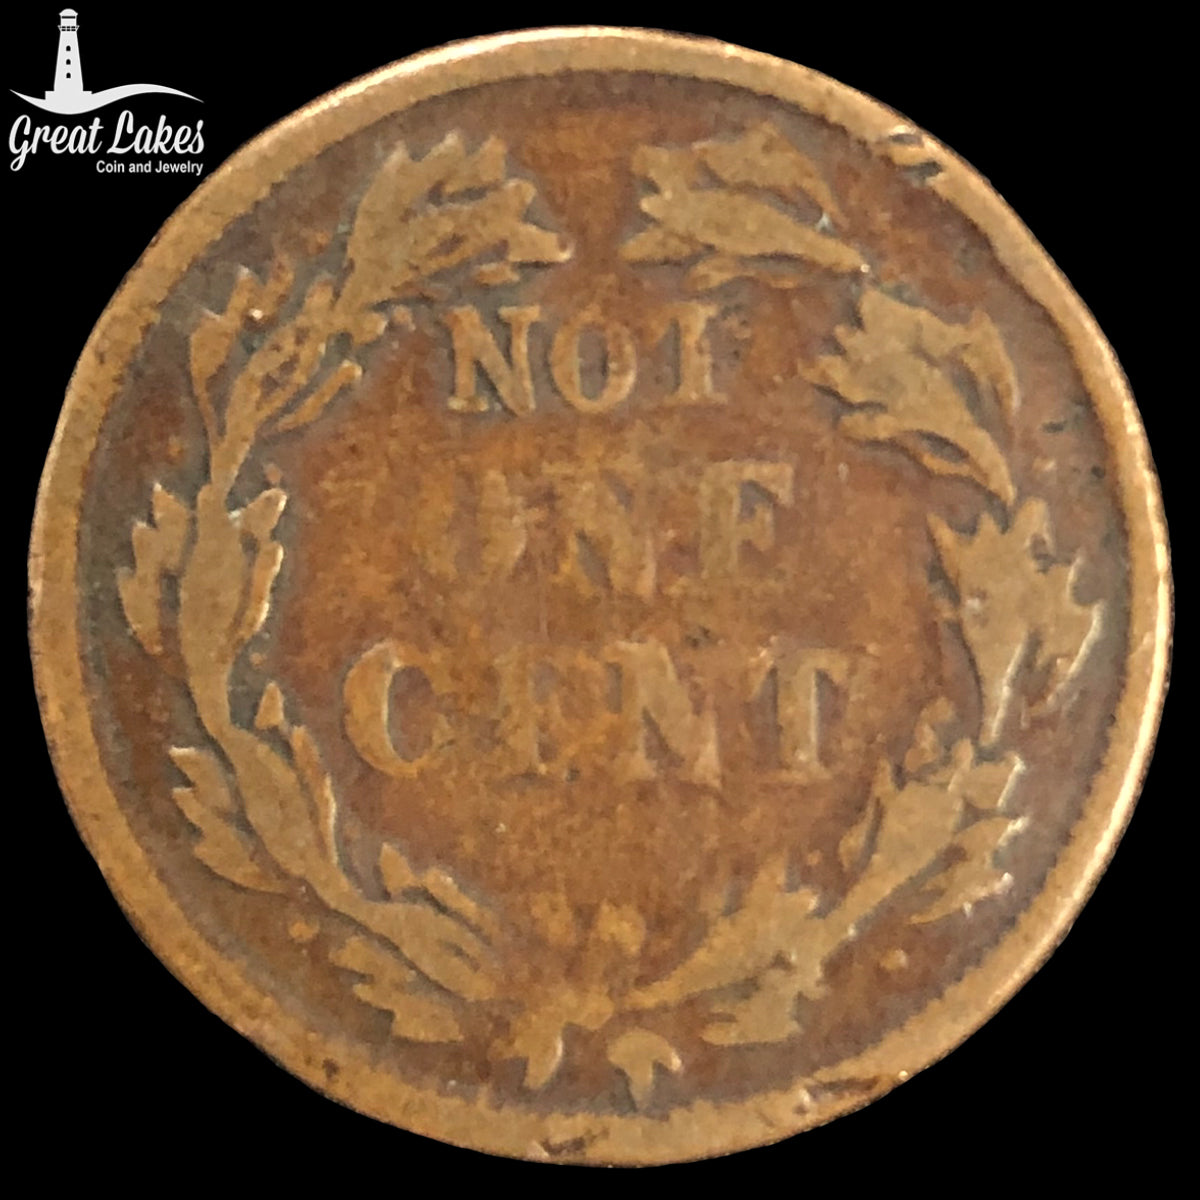 1863 “Not One Cent” Civil War Token